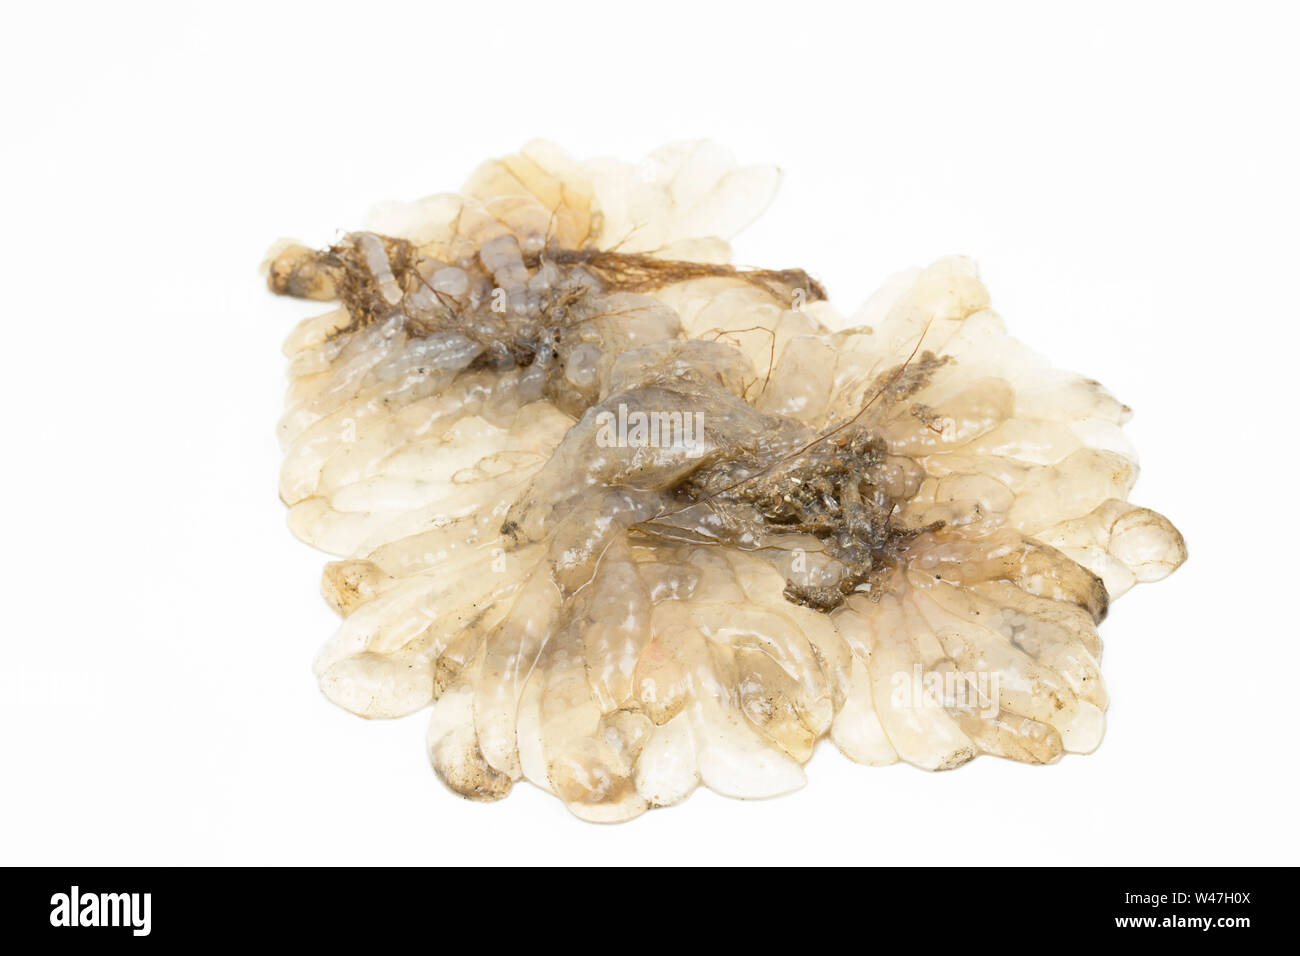 Un bouquet d'oeufs de calmars, ou spawn, trouvés dans la Manche et photographié sur un fond blanc dans un studio. Dorset England UK GO Banque D'Images